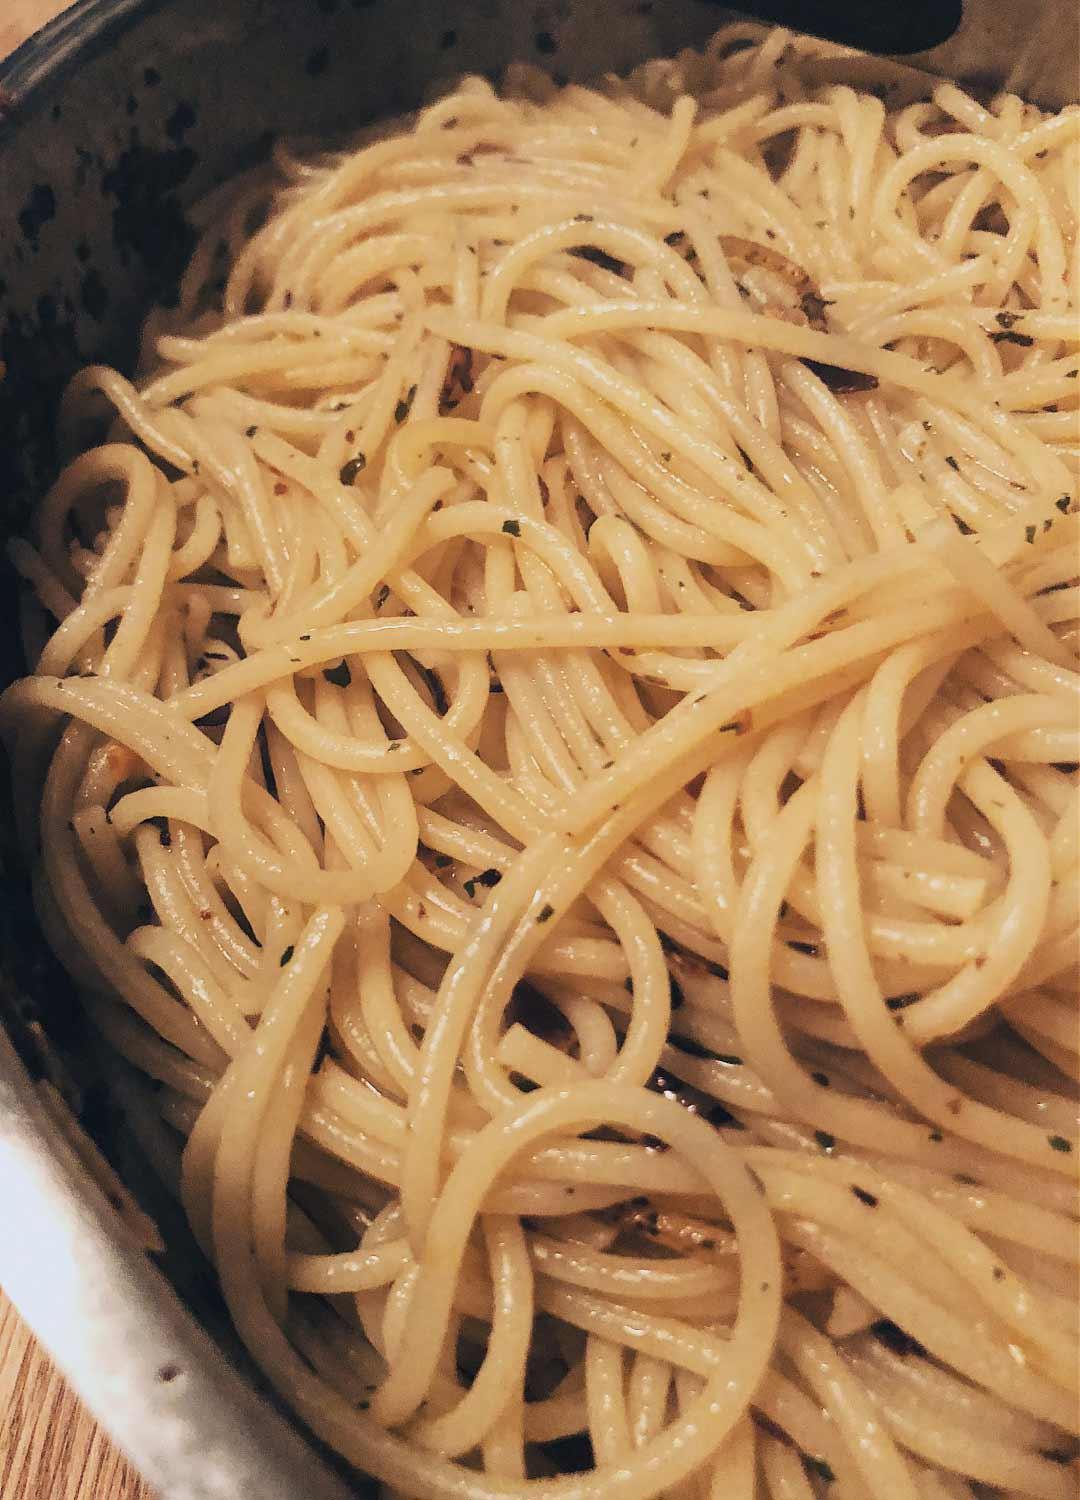 spaghetti rezept, spaghetti olio, spaghetti aglio, spaghetti aglio olio, spaghetti rezepte, rezepte, nudeln, rezepte pasta, pasta rezepte, spaghetti